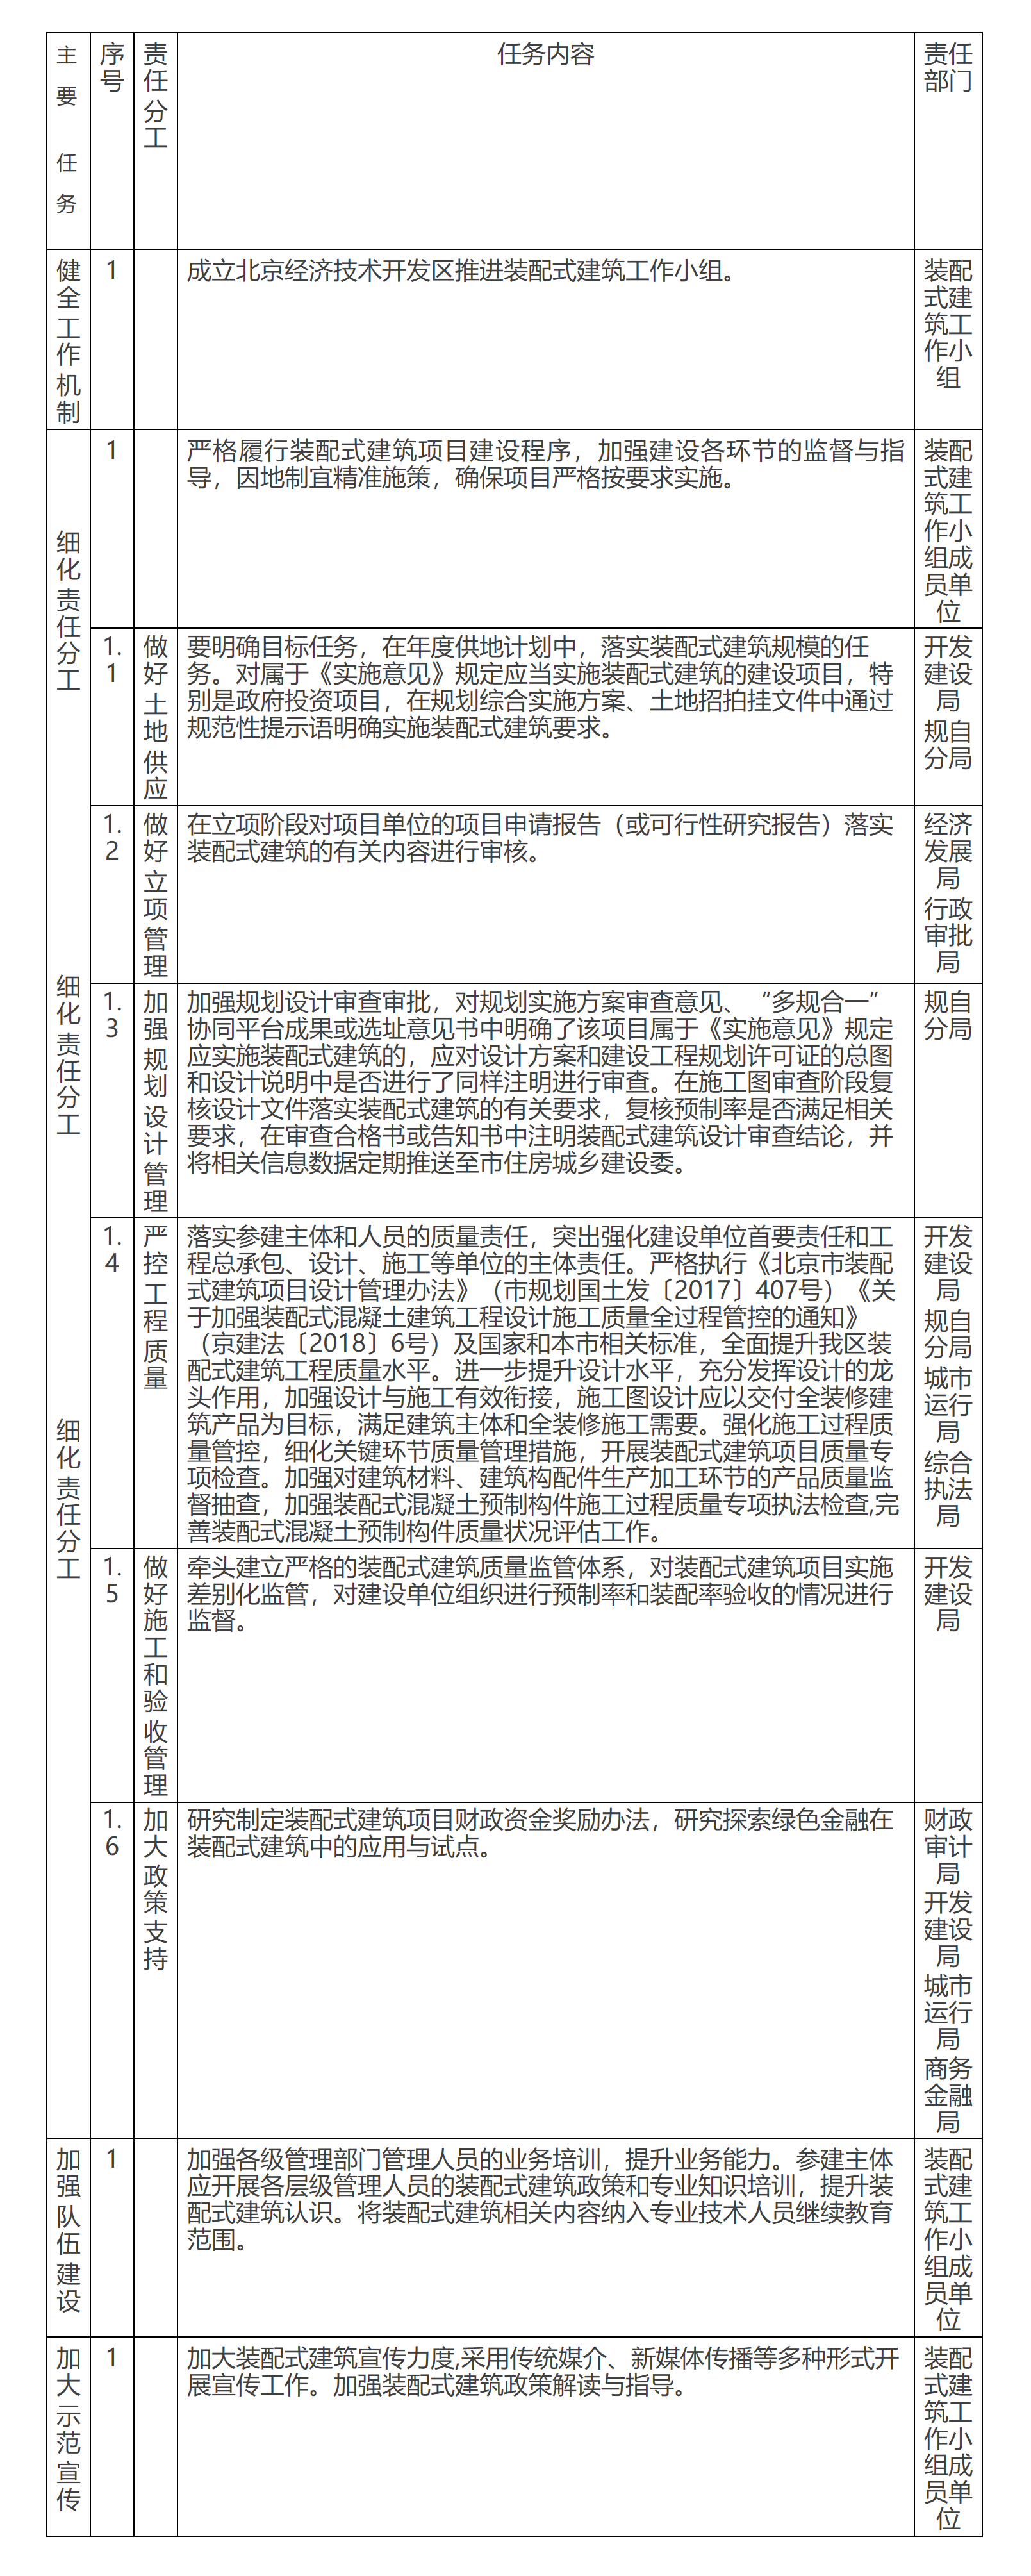 附表：《北京經濟技術開發區關於發展裝配式建築的實施意見》責任分工細化表